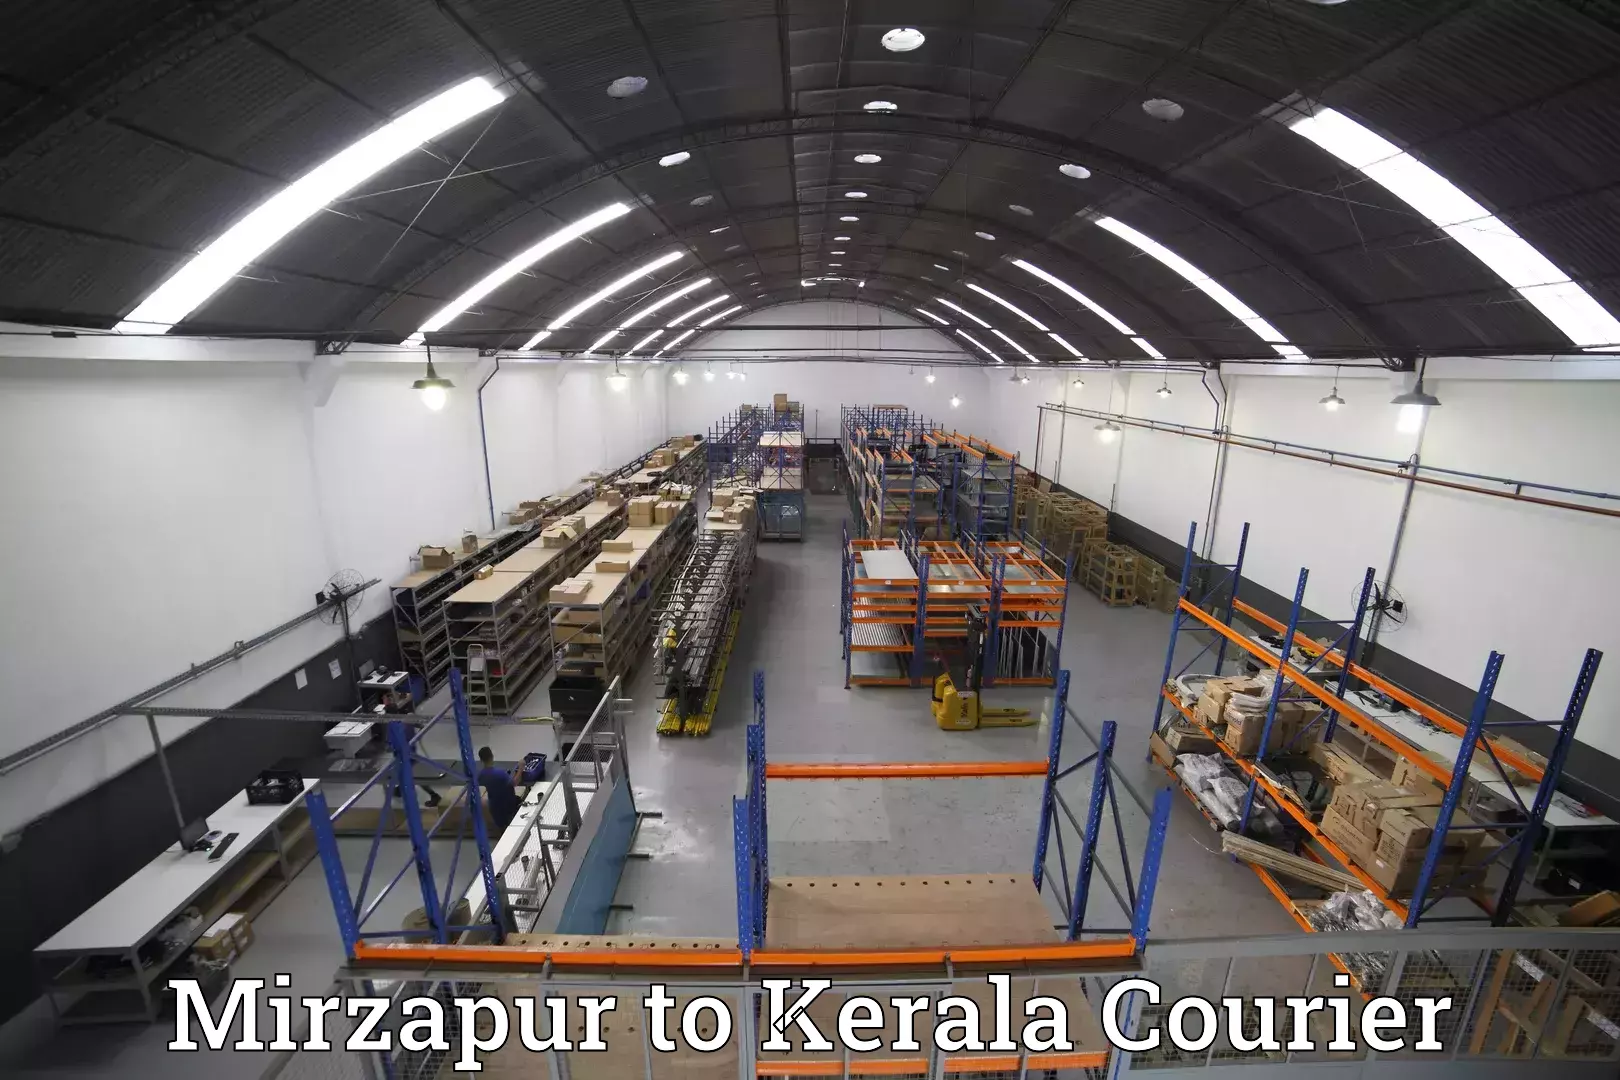 Baggage shipping experts Mirzapur to Kerala